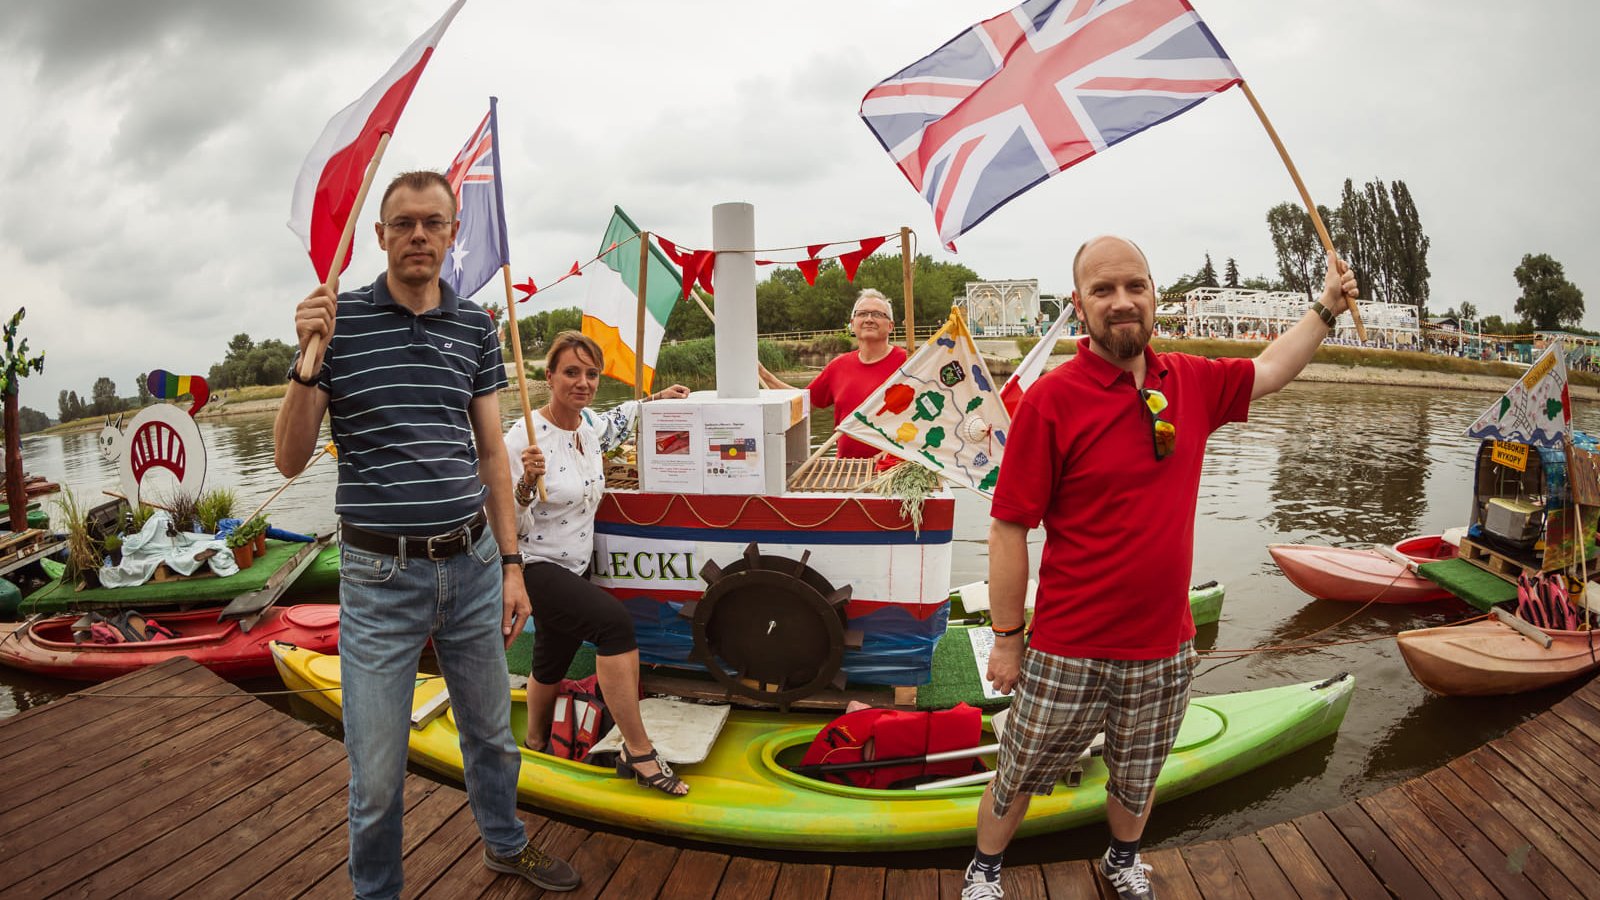 Trzech mężczyzn i kobieta pozują przy swojej intalacji. Na dwóch kajakach stoi mały statek z napisem "Strzelecki". Osoby trzymają flagę Polski, Wielkiej Brytanii, Irlandii i Australii. Obok nich stoją jeszcze dwie instalacje z osiedli.